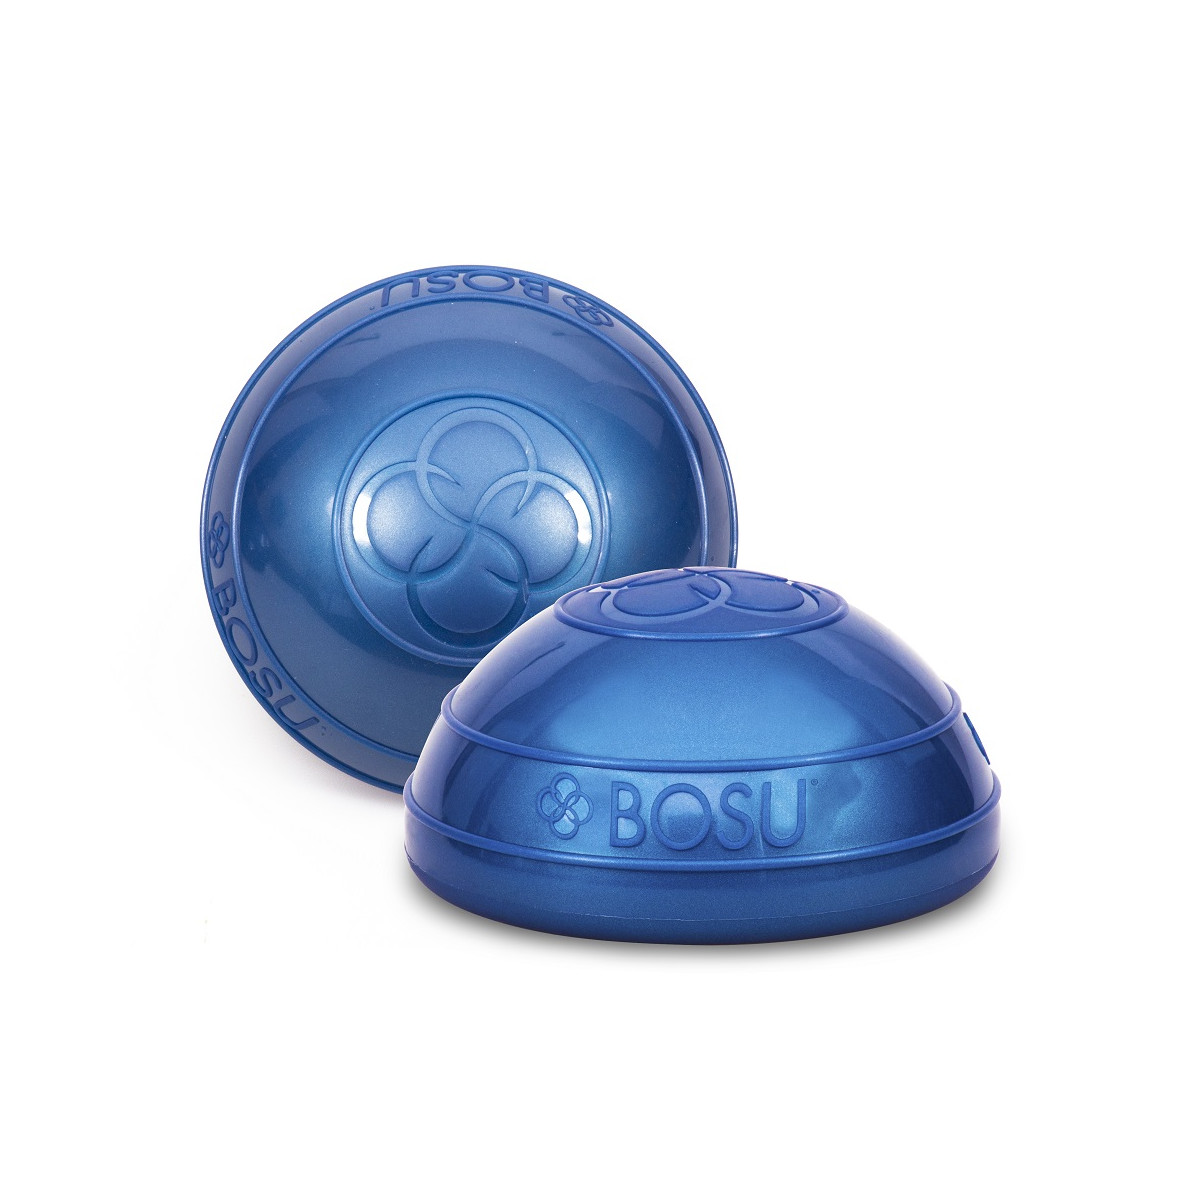 BOSU® Balance Pods  The All-New Mini BOSU Balance Training Product 